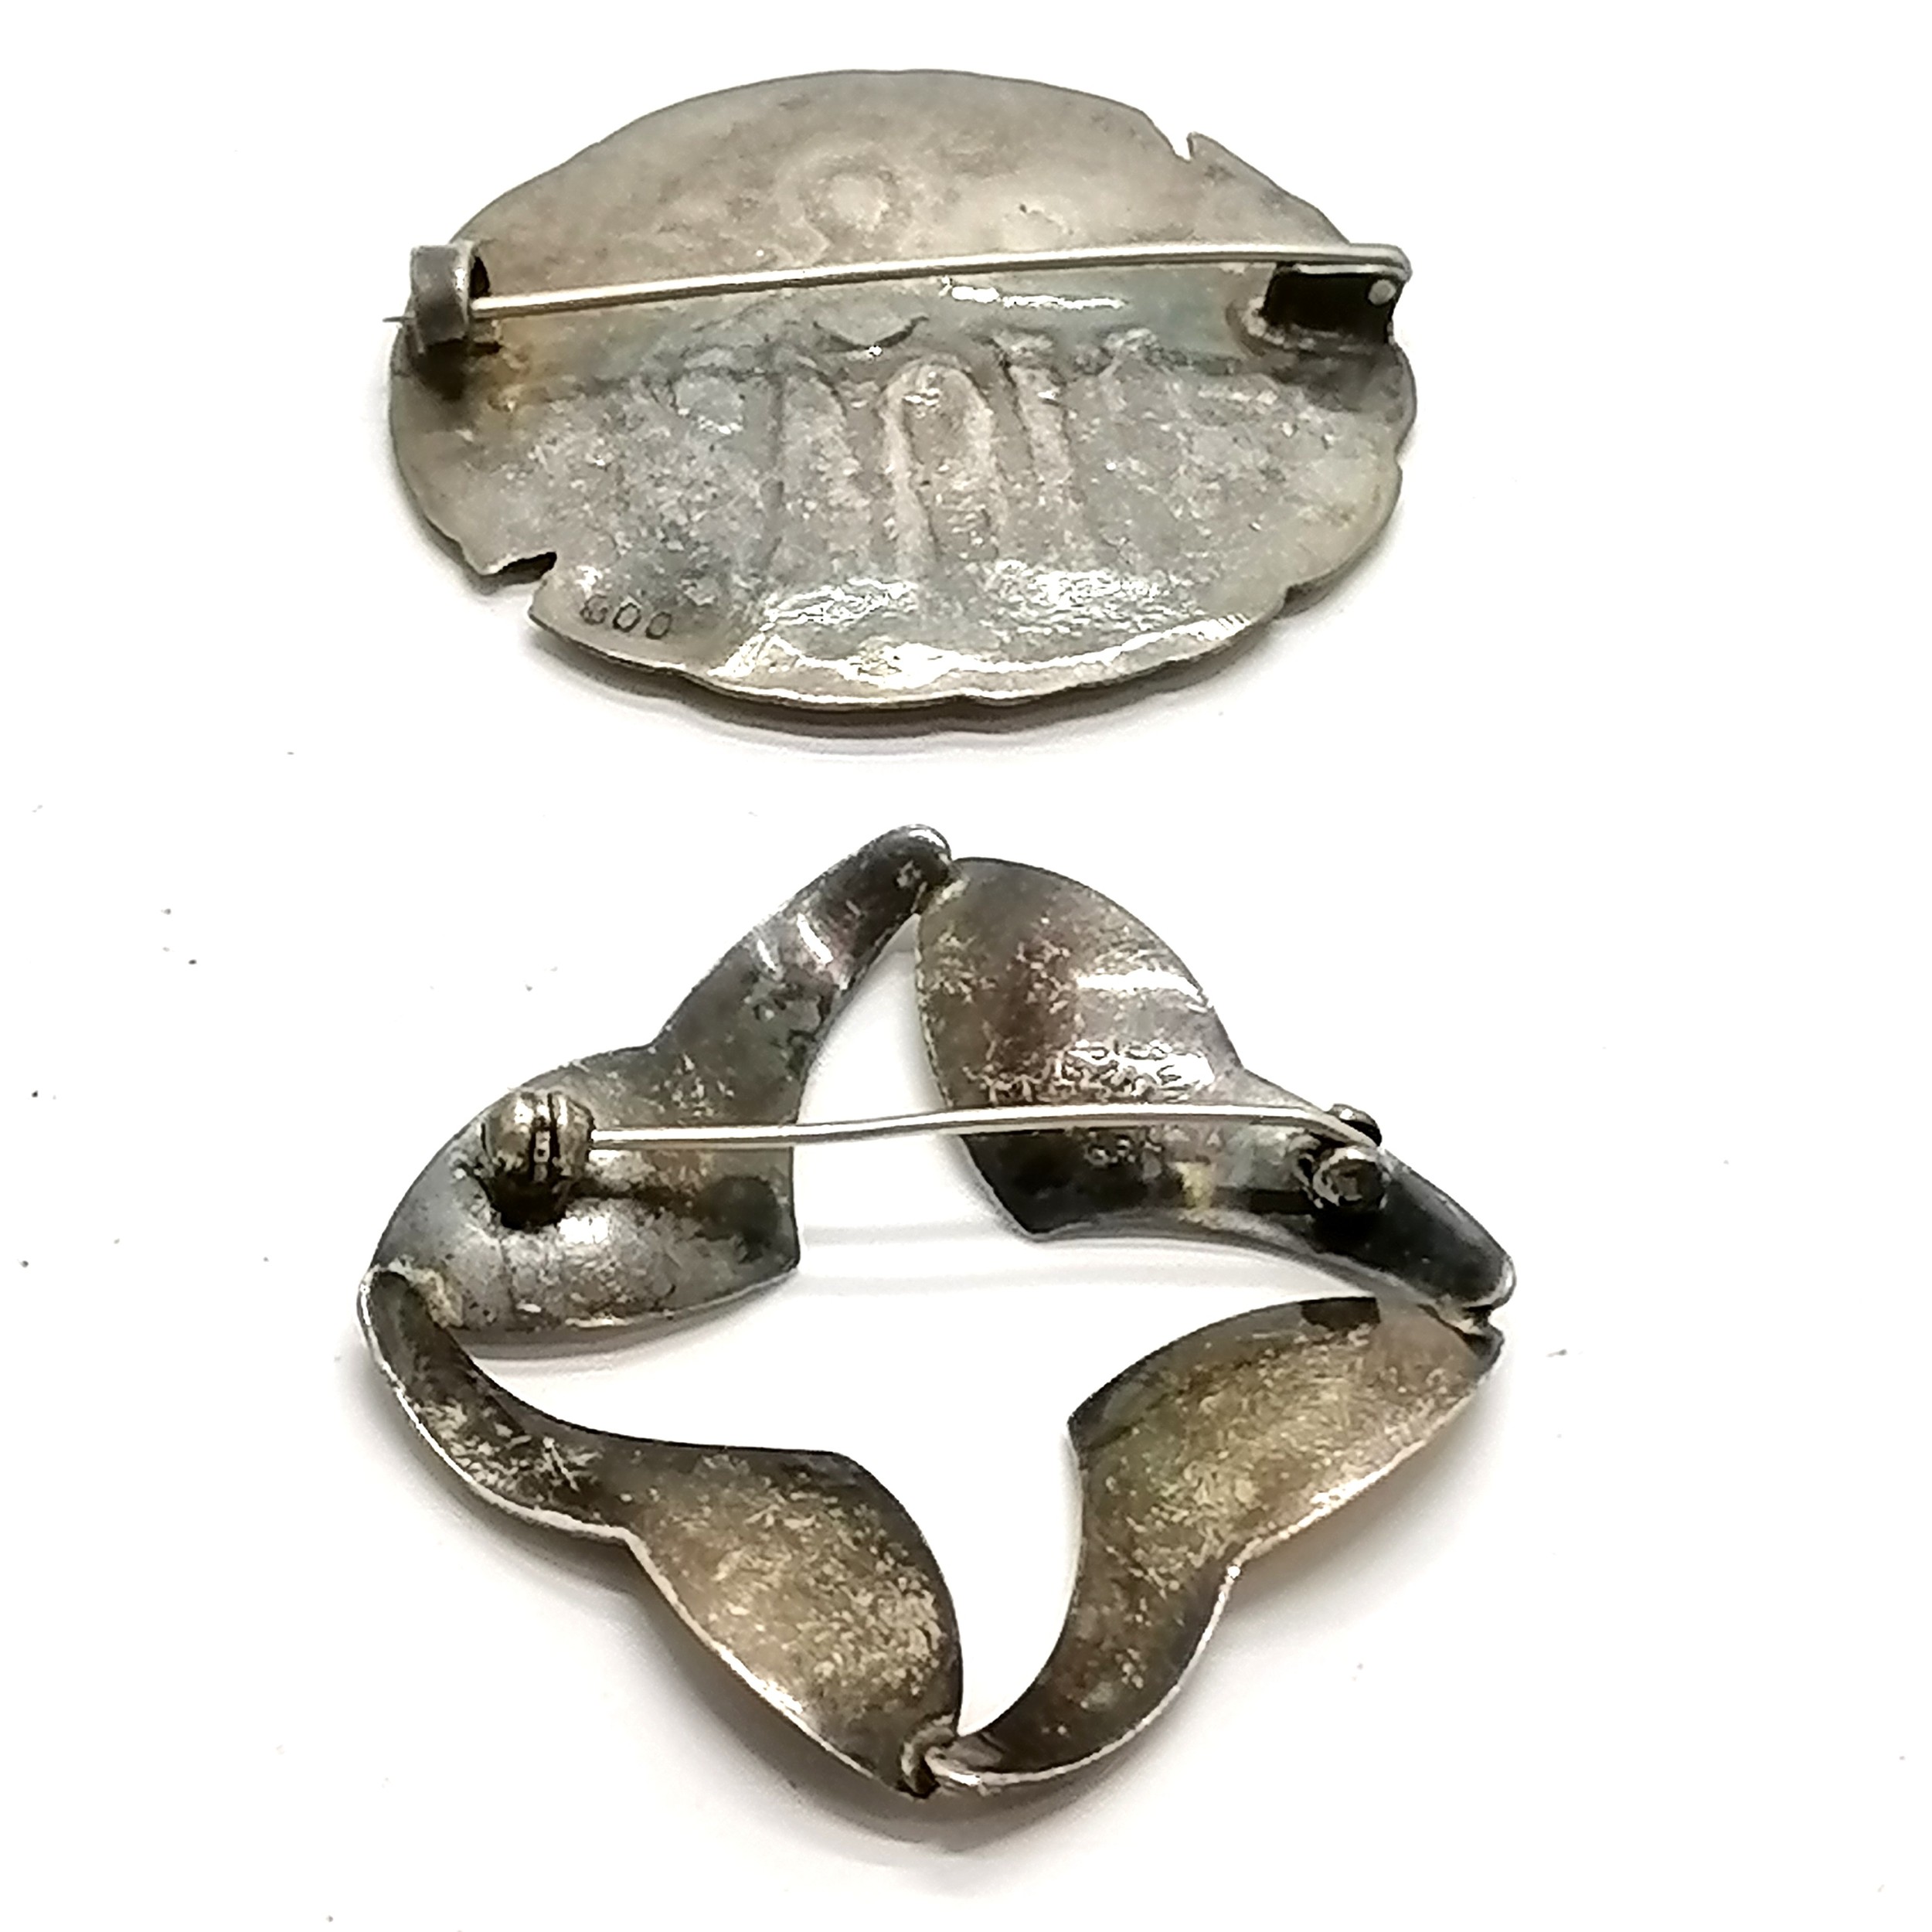 Aarre & Krogh modernist silver brooch (4.5cm across) t/w 800 silver handmade brooch - total - Image 2 of 3